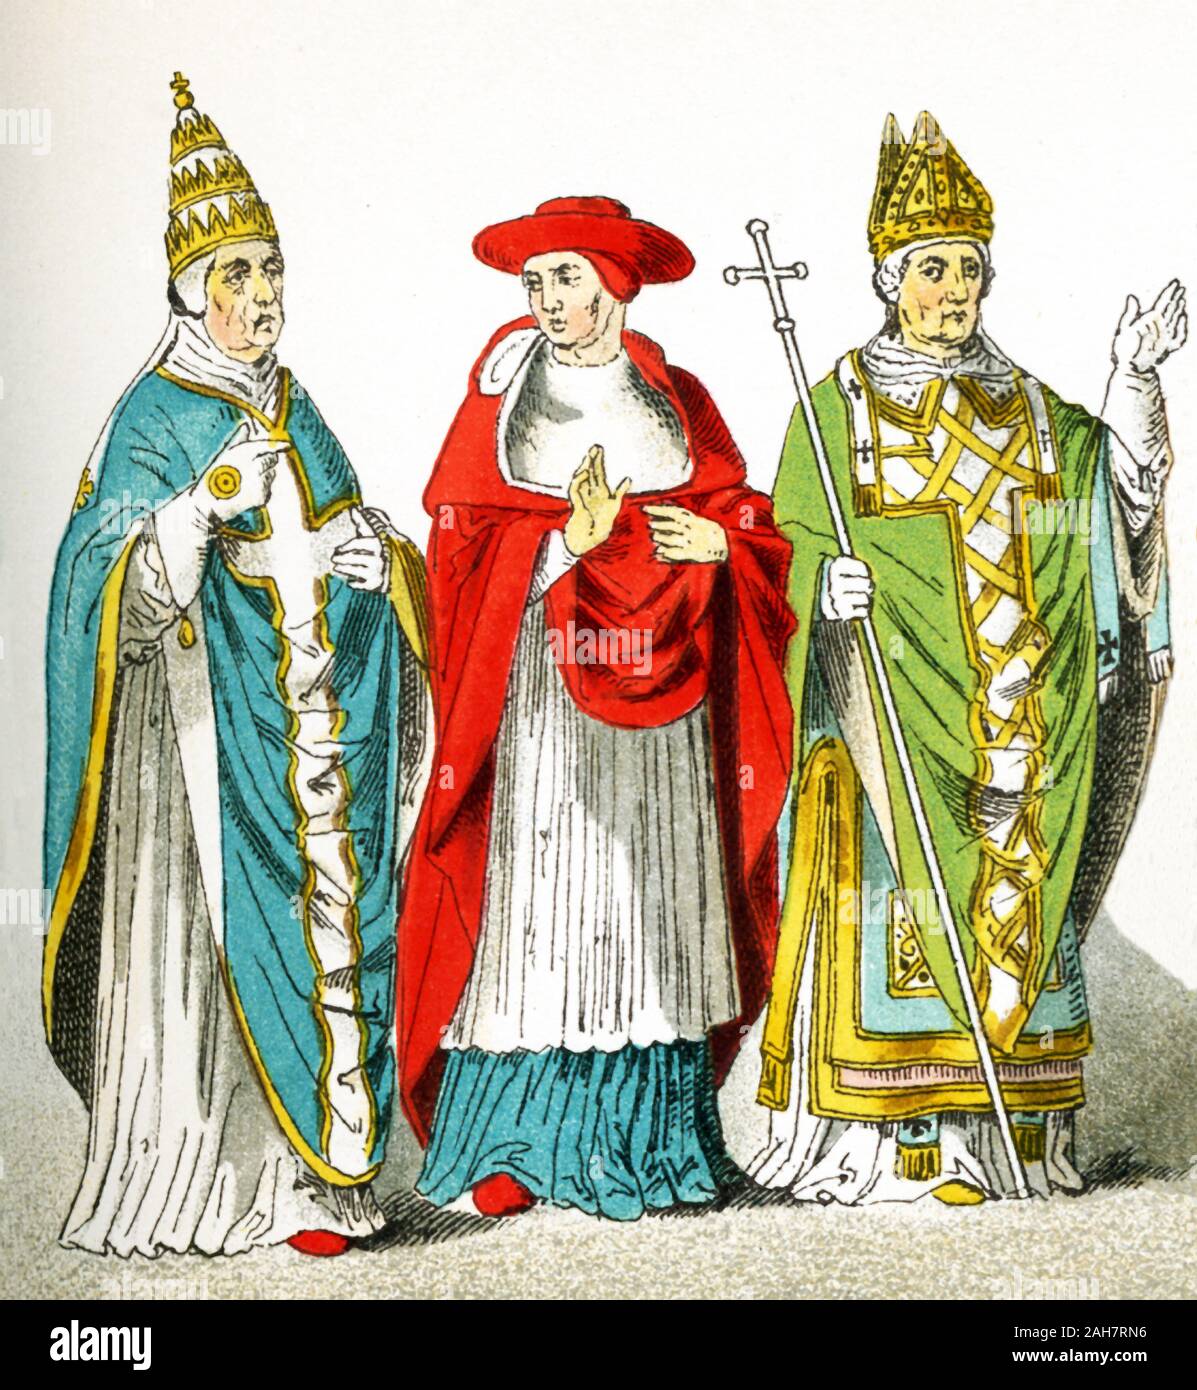 Les chiffres de cette image sont les Italiens de l'an 1300 de notre ère. Ils représentent, de gauche à droite : un pape, un cardinal, un archevêque. L'illustration dates à 1882. Banque D'Images